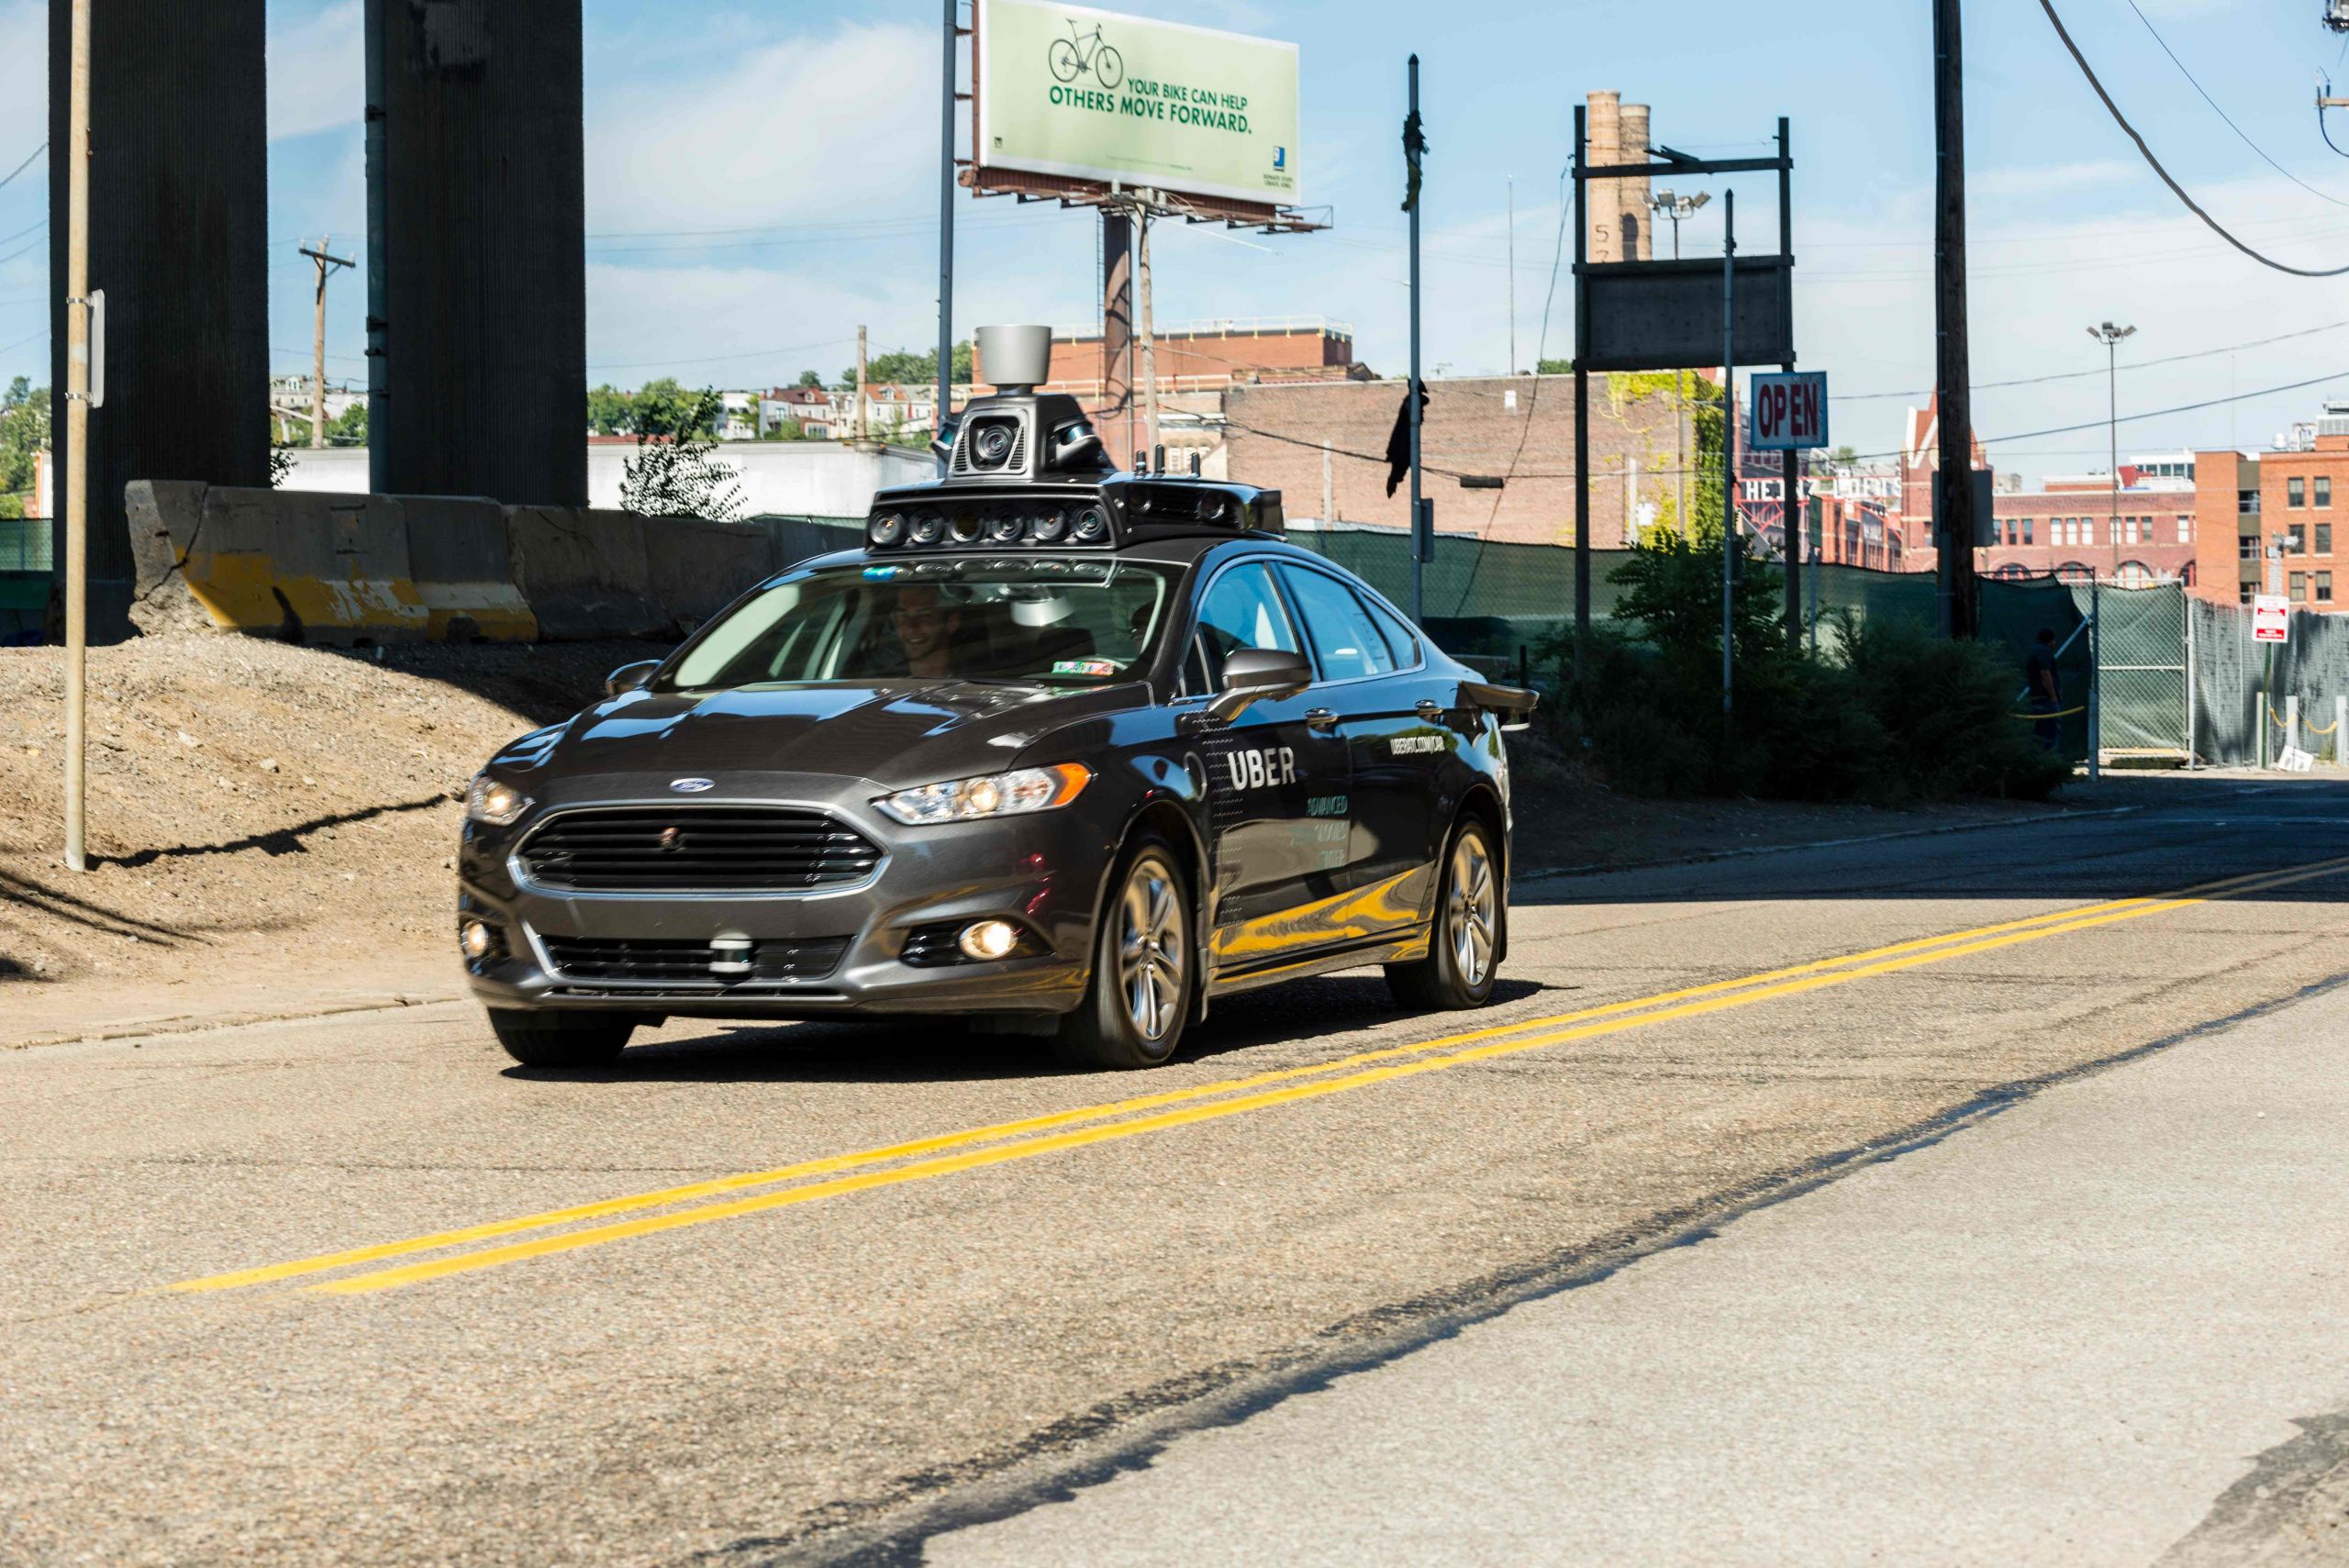 Proefmodel van een autonome Uber, het type auto dat het dodelijke auto veroorzaakte. 